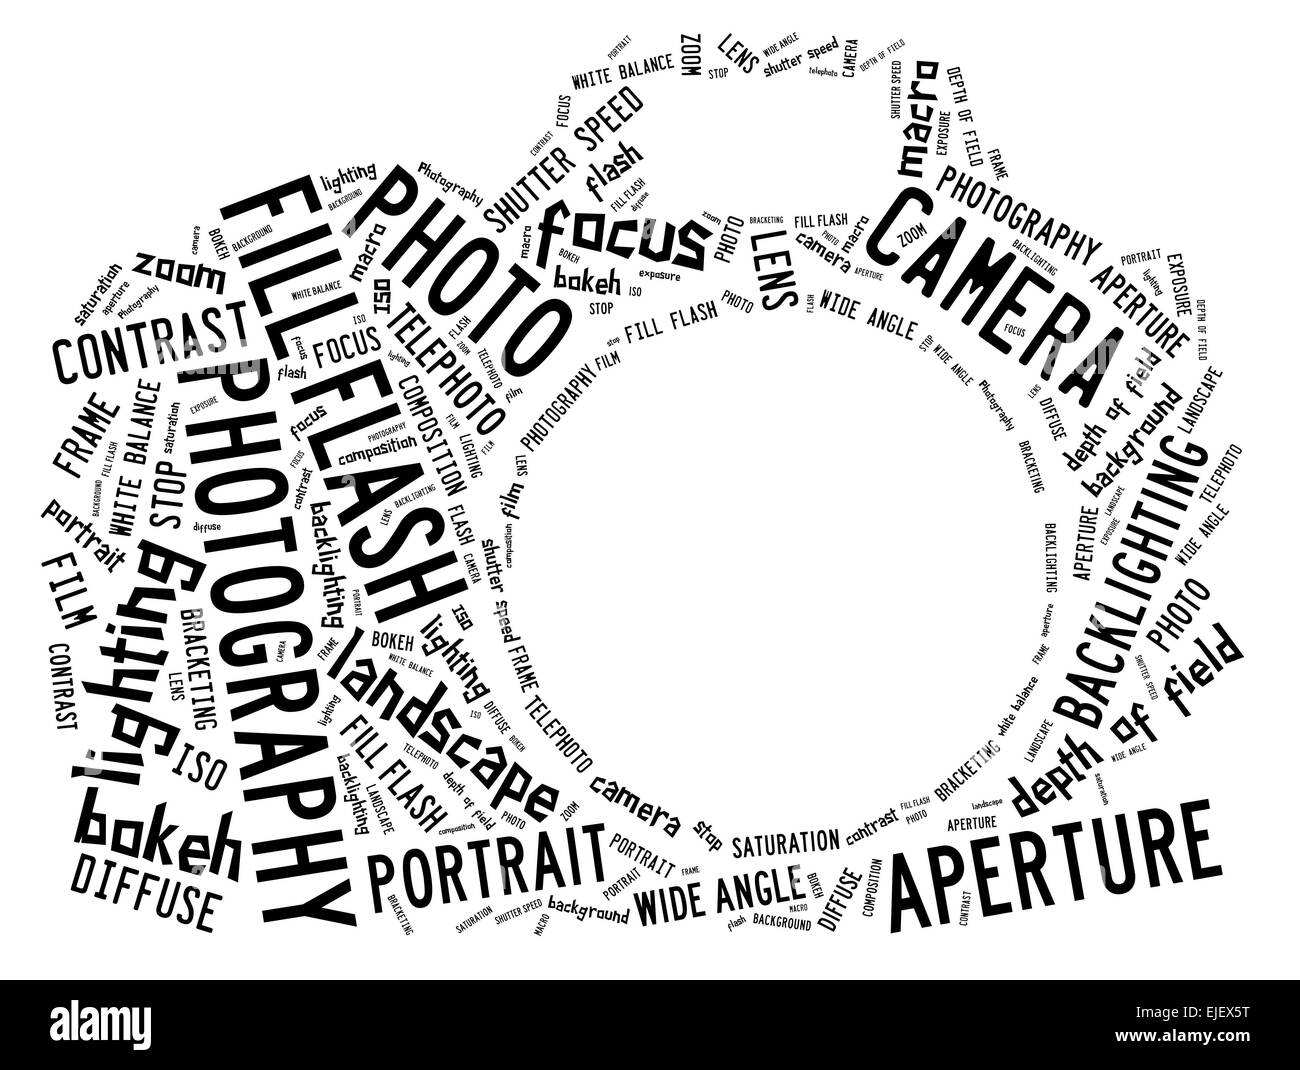 Nuage de mots dans la forme d'une caméra montrant des mots qui traitent de la photographie Banque D'Images